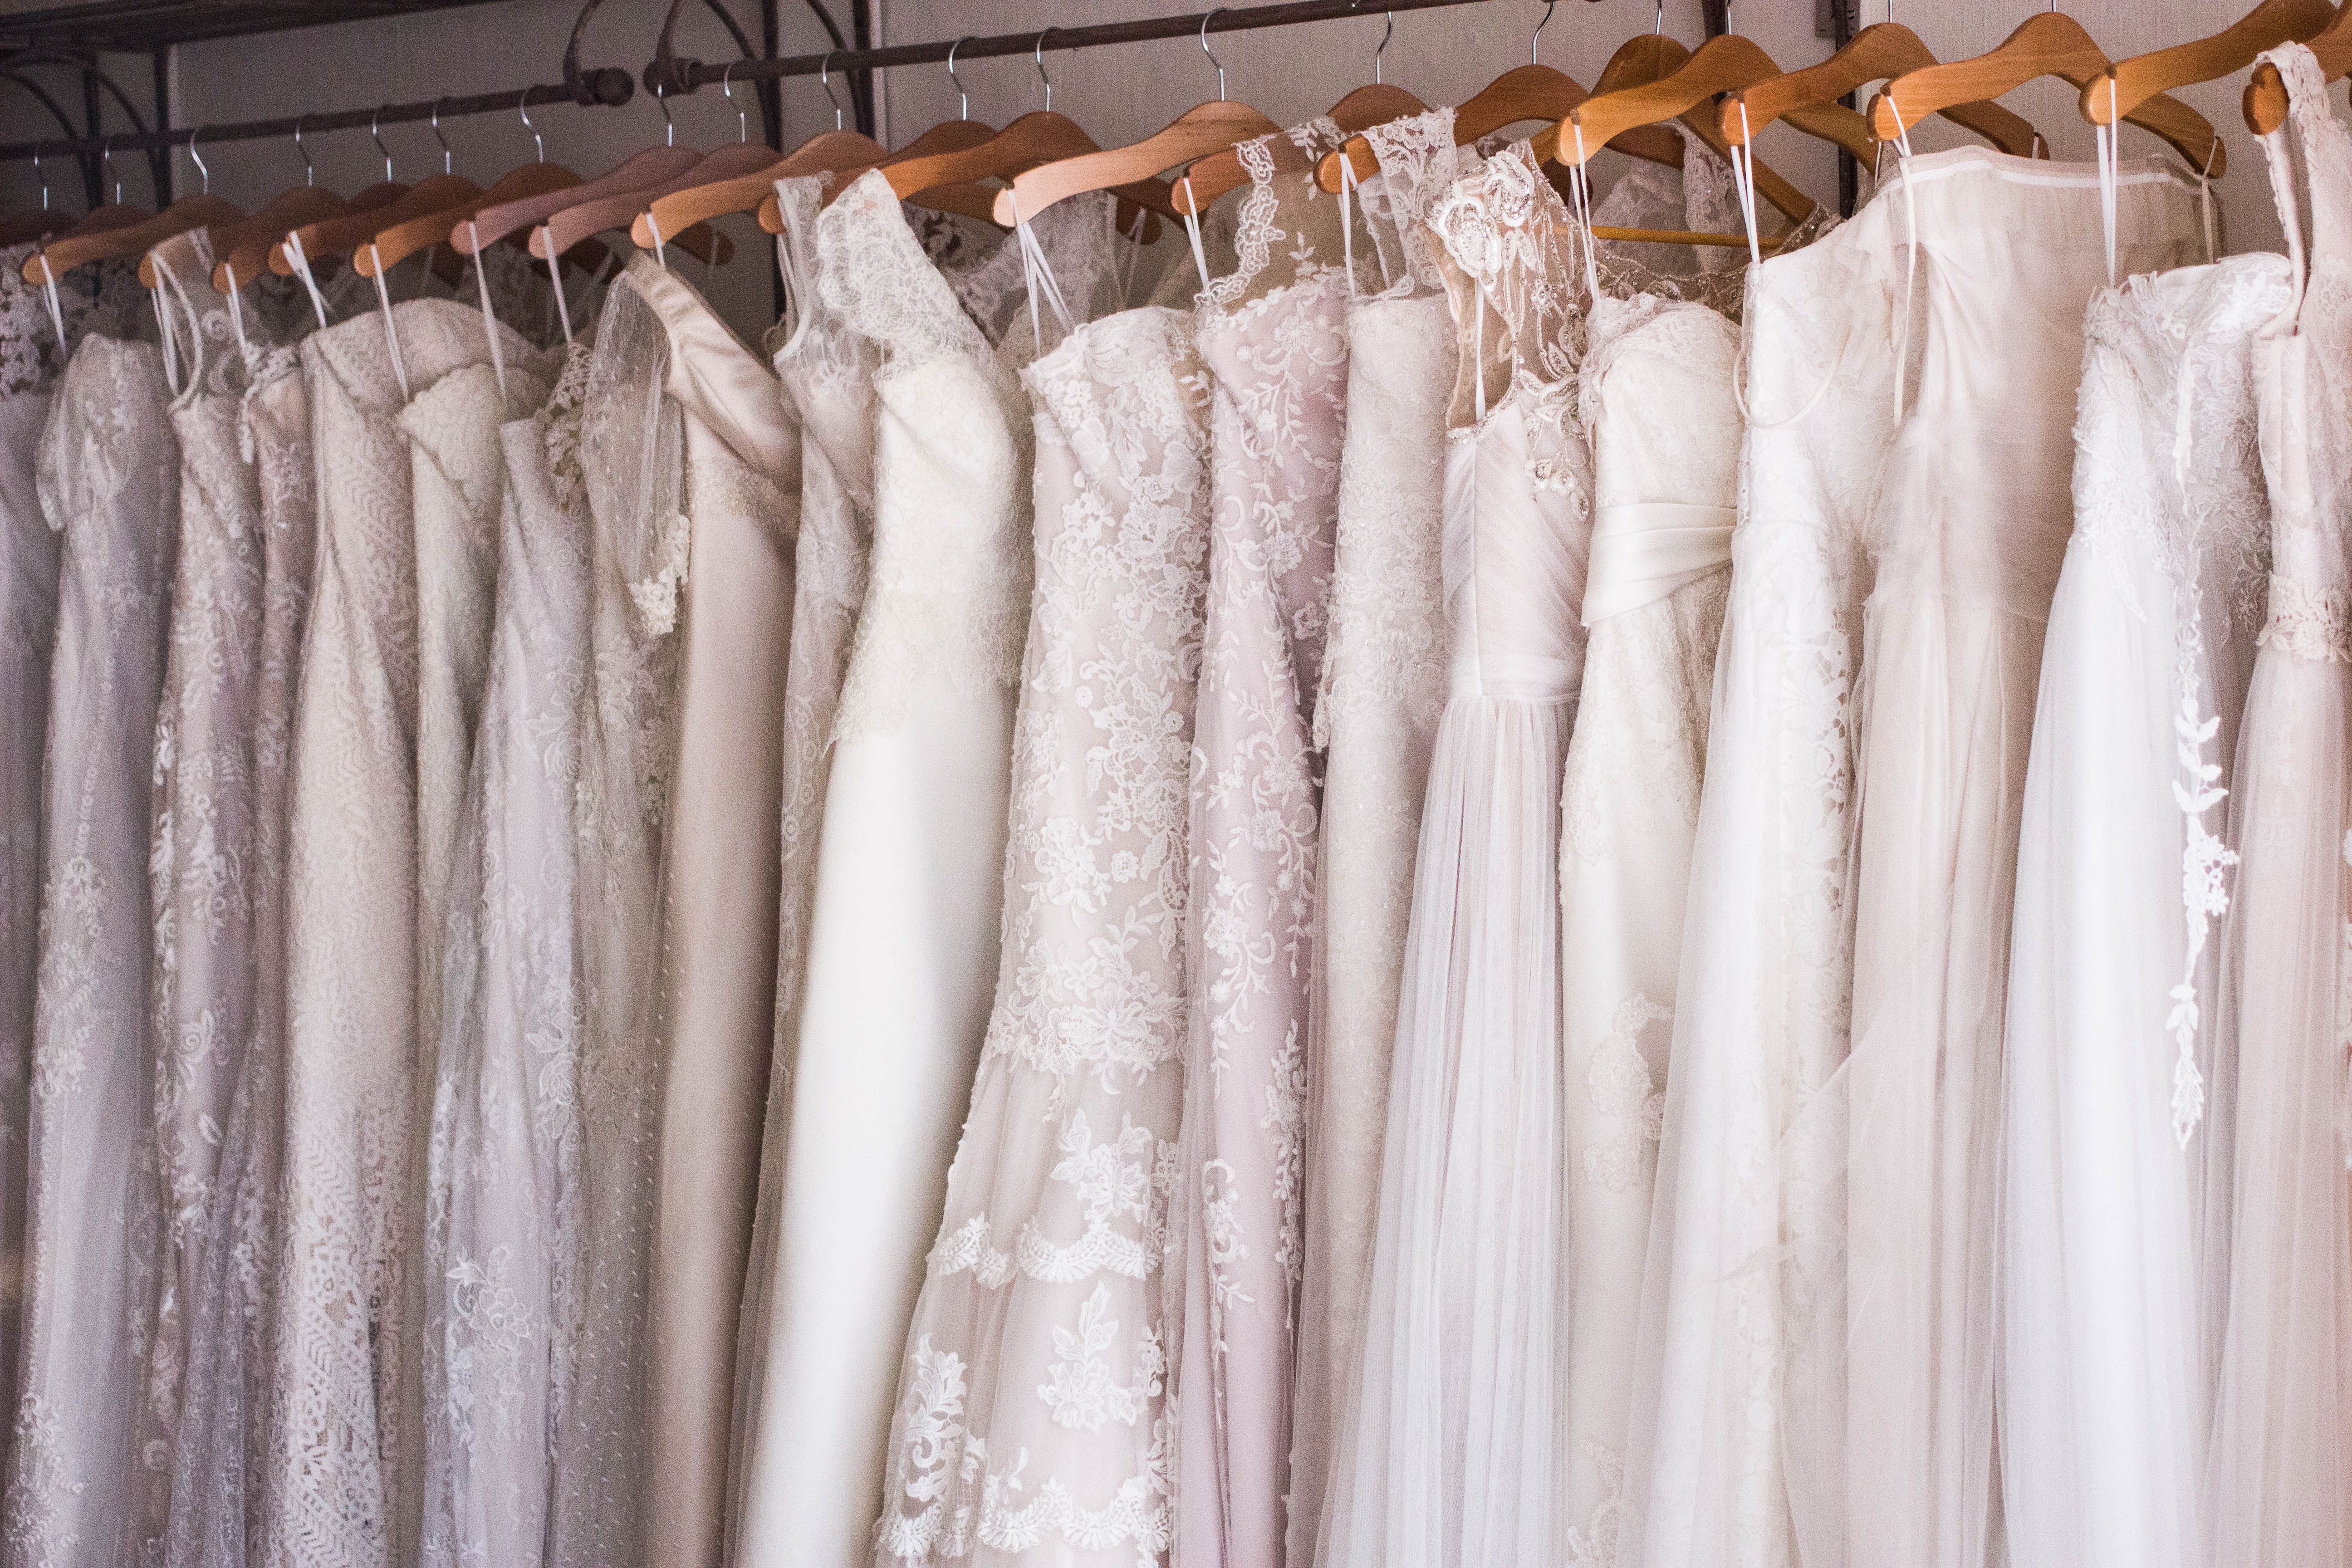 Při výběru svatebních šatů a doplňků se zaměřte na celkový styl a místo obřadu